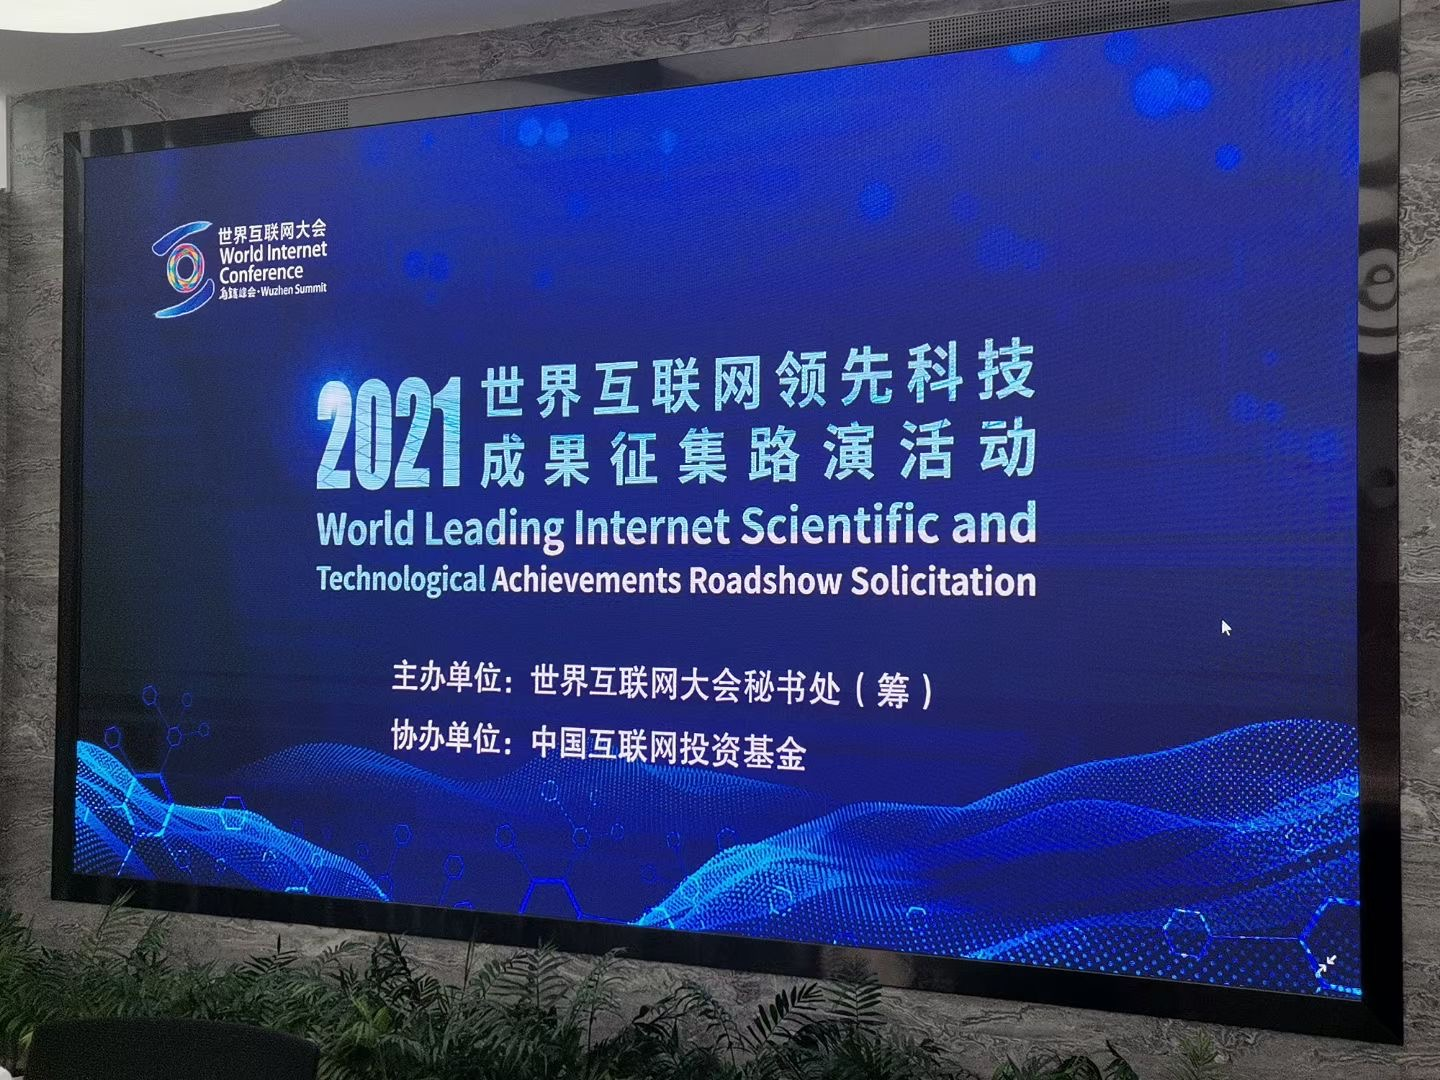 Zoho One亮相2021年世界互联网科技成果征集路演活动